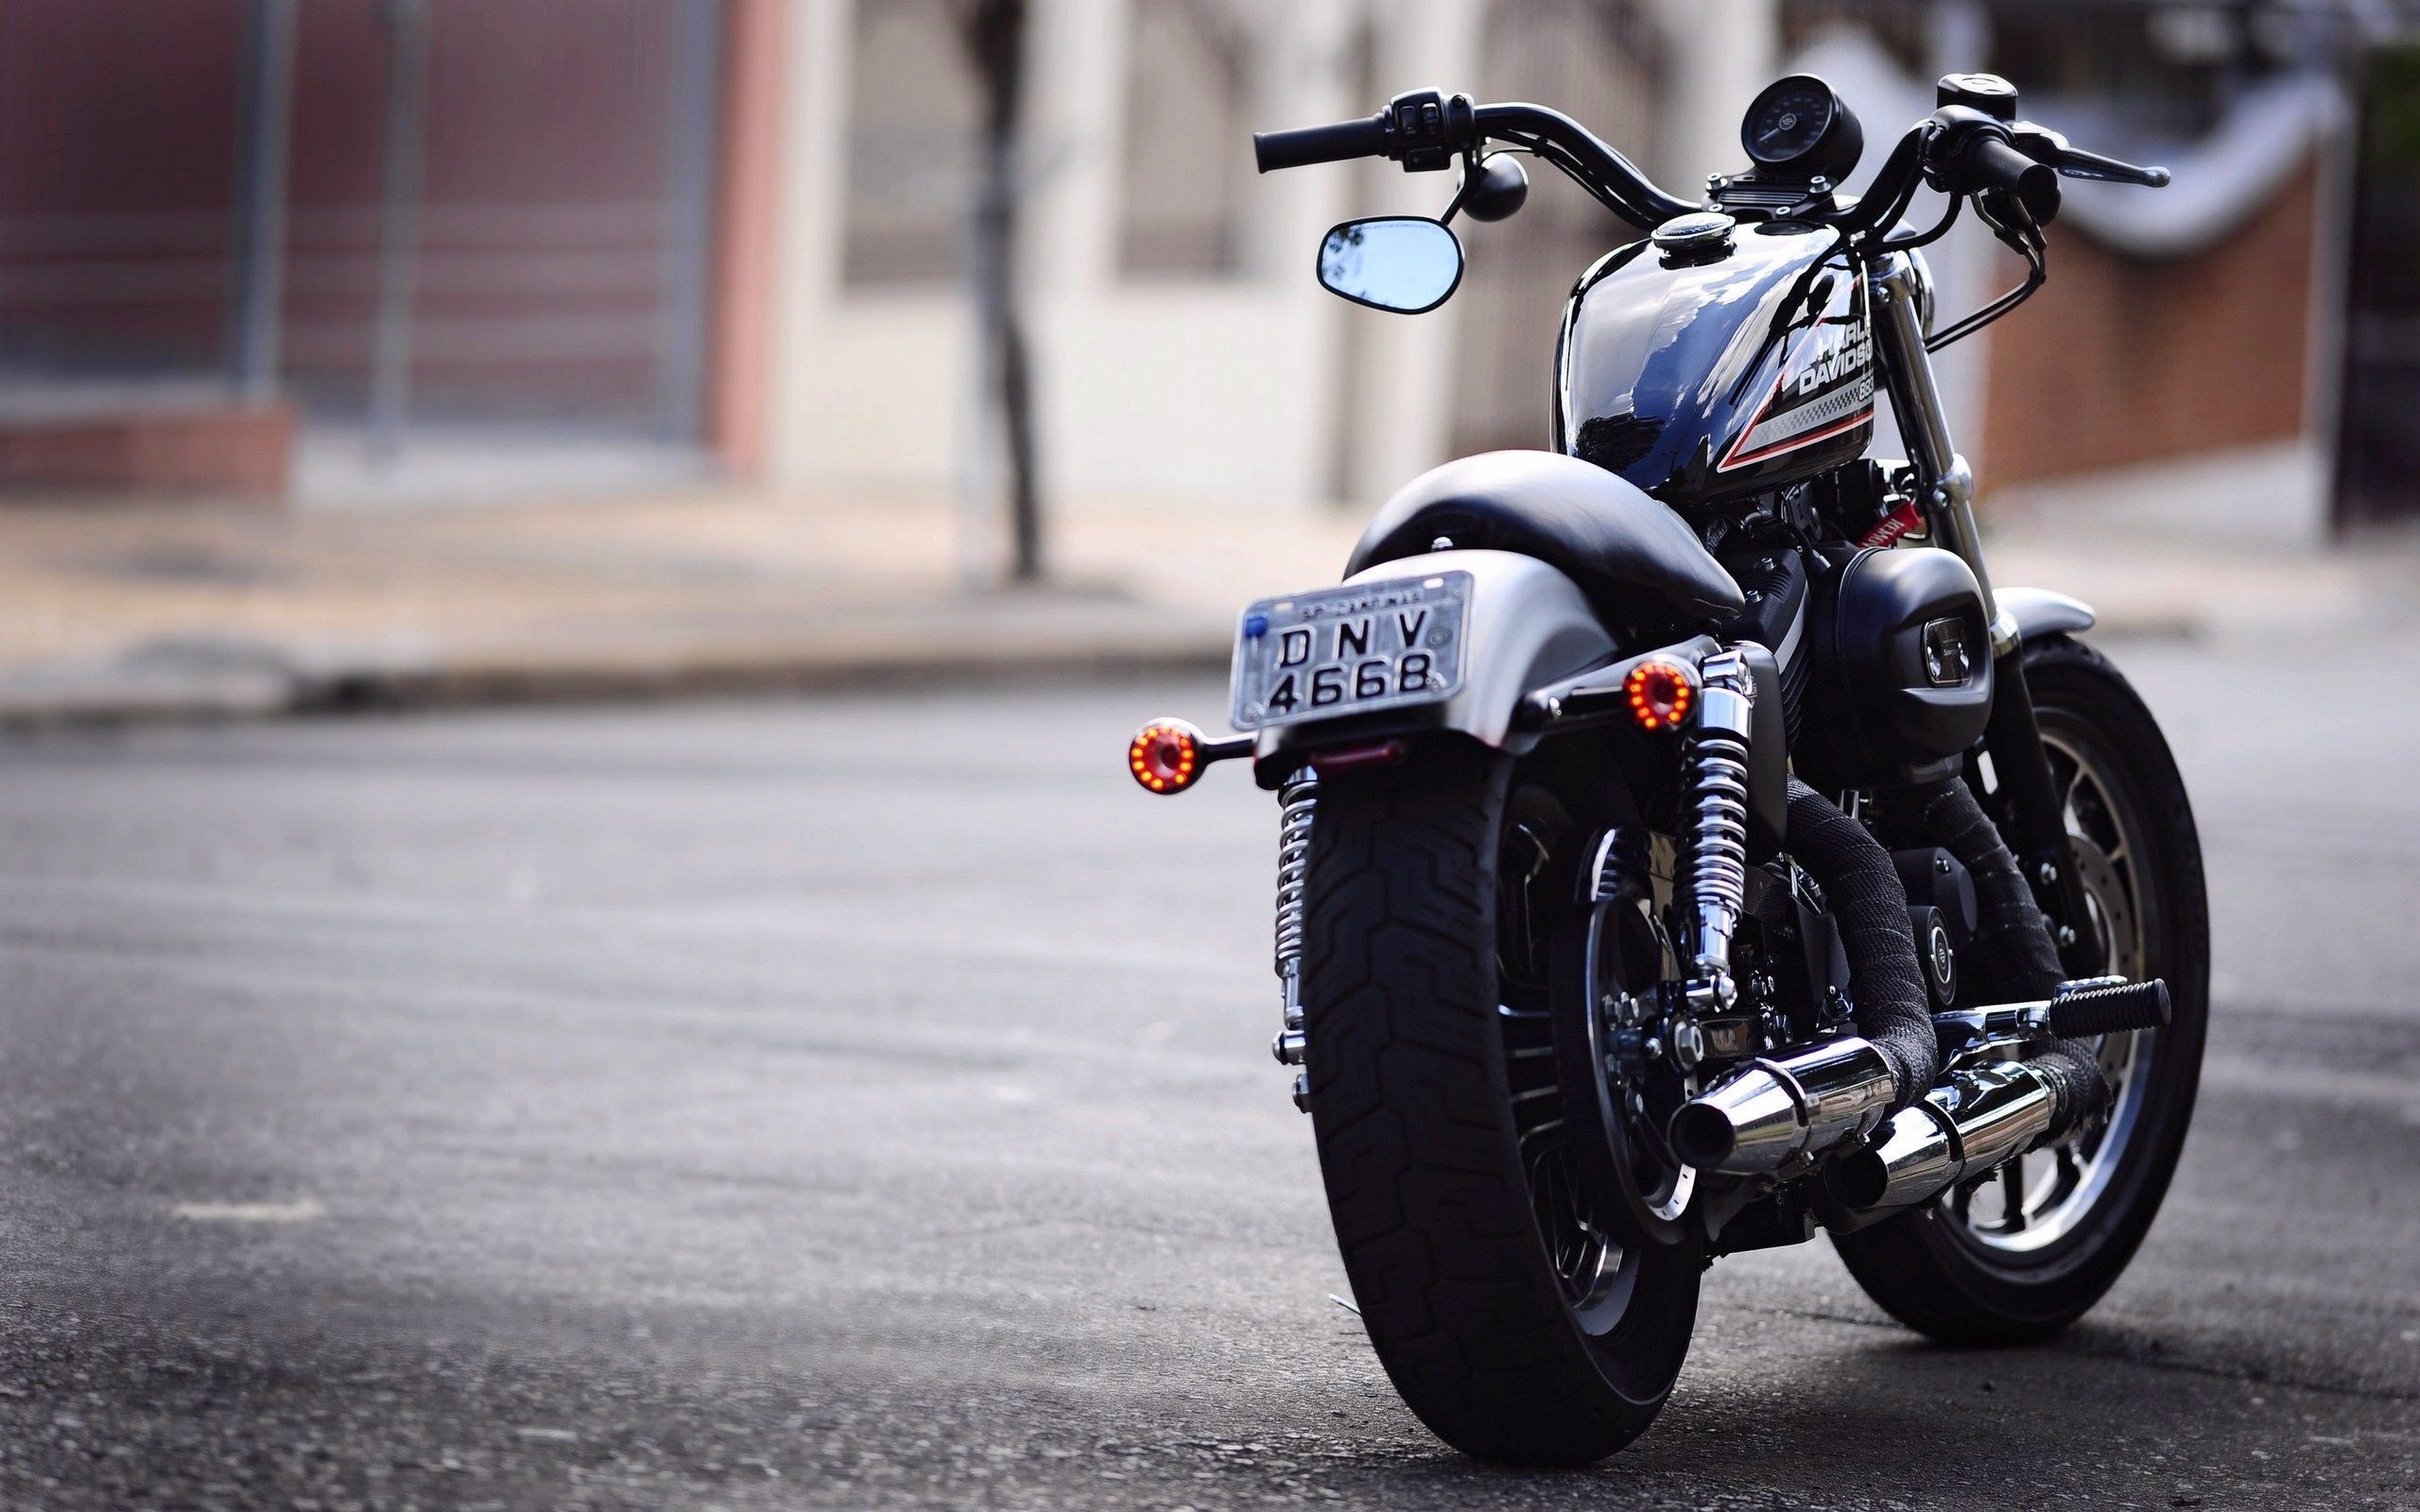 General 2560x1600 Harley-Davidson motorcycle vehicle numbers American motorcycles